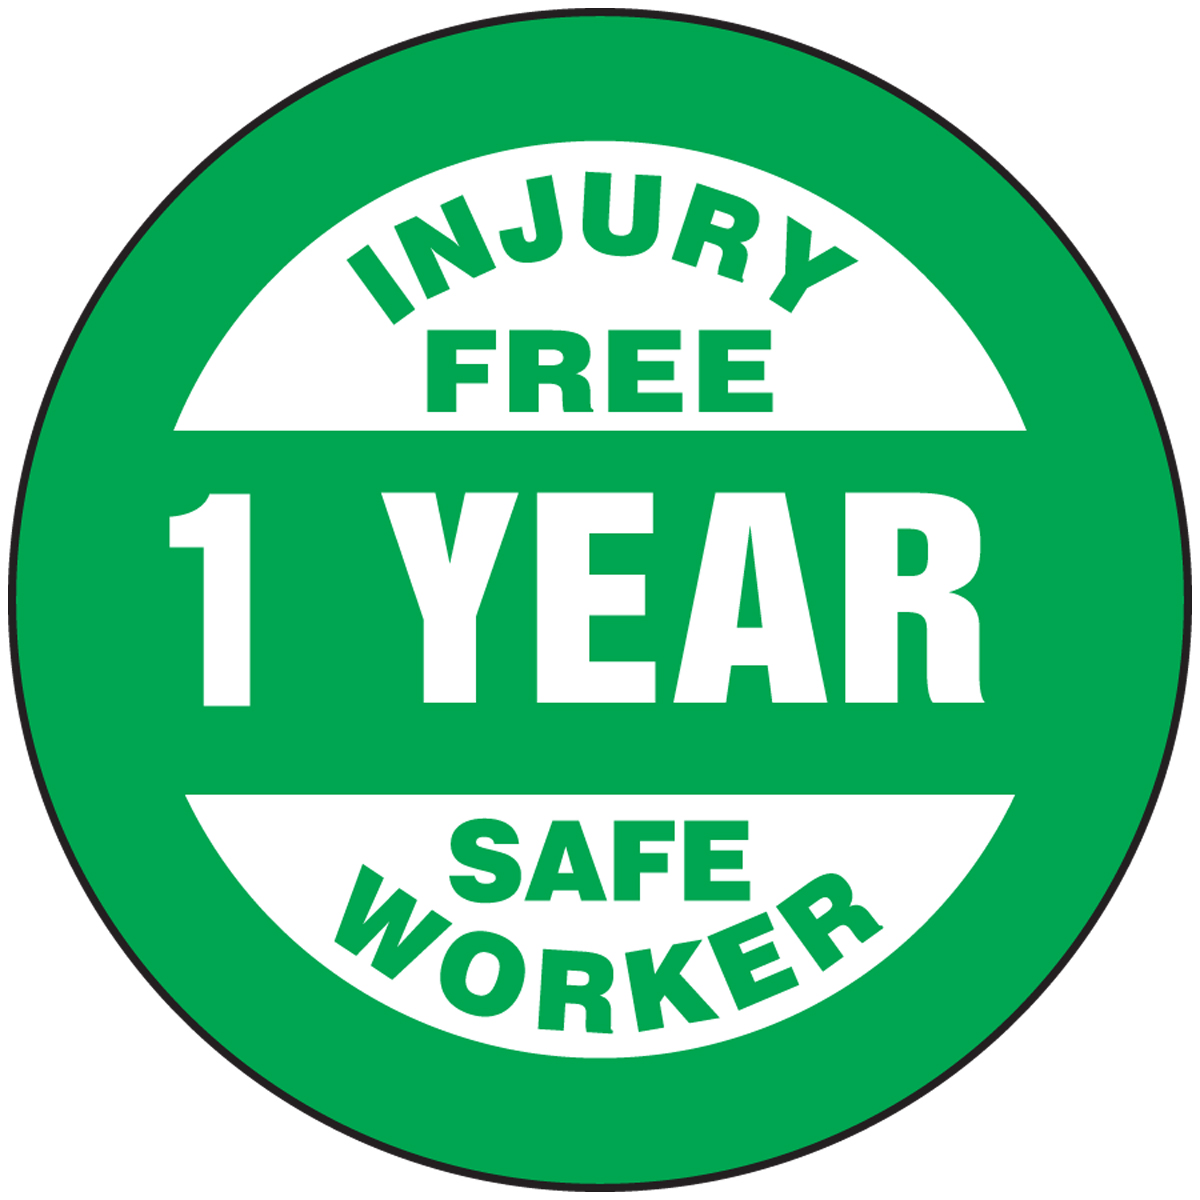 INJURY FREE 1 YEAR SAFE WORKER